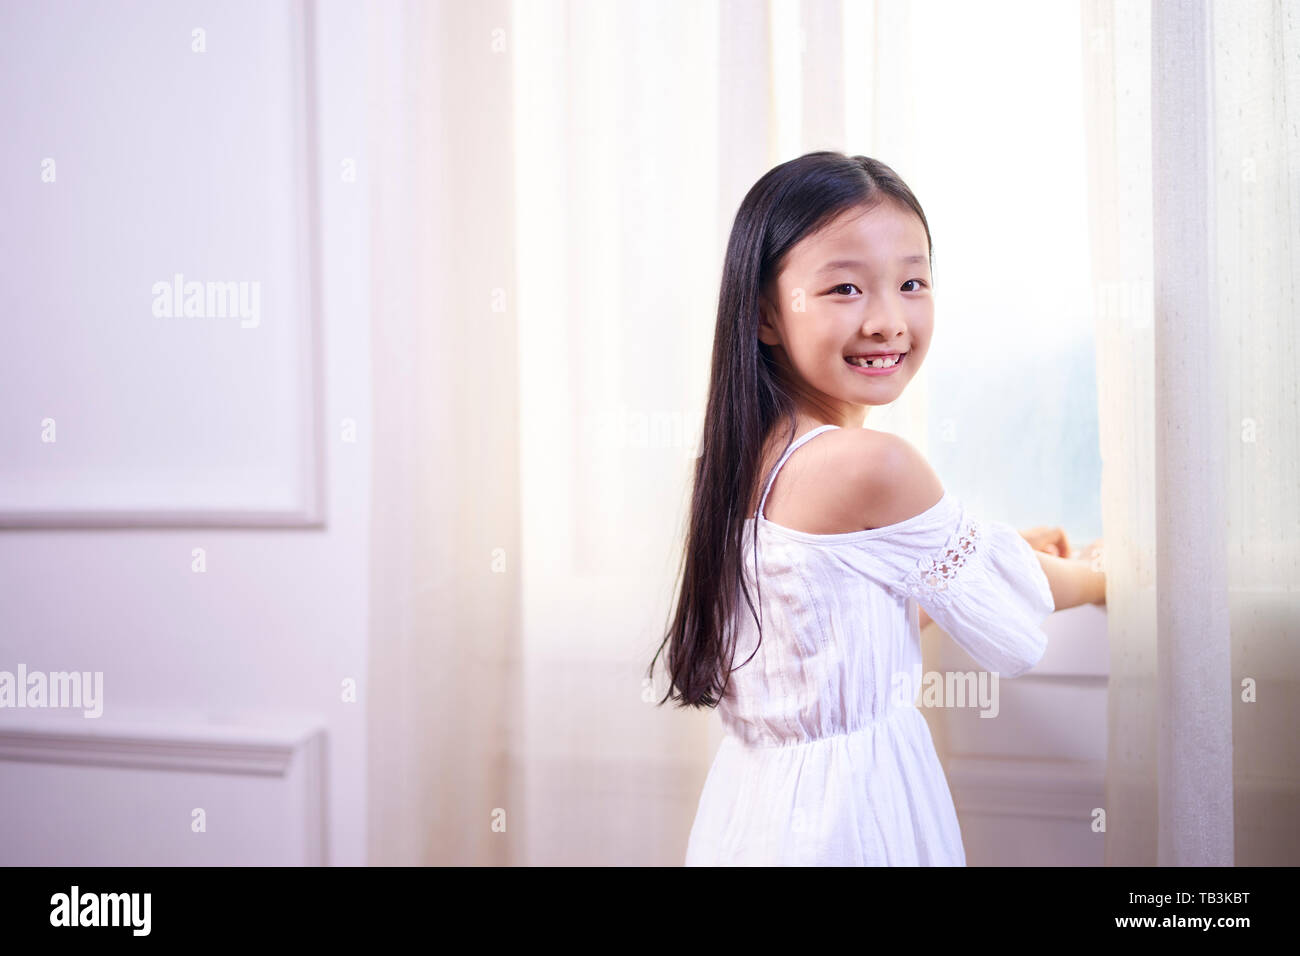 Schöne kleine asiatische Mädchen mit langen schwarzen Haaren stand vor der windwo Drehen in die Kamera lächeln Stockfoto